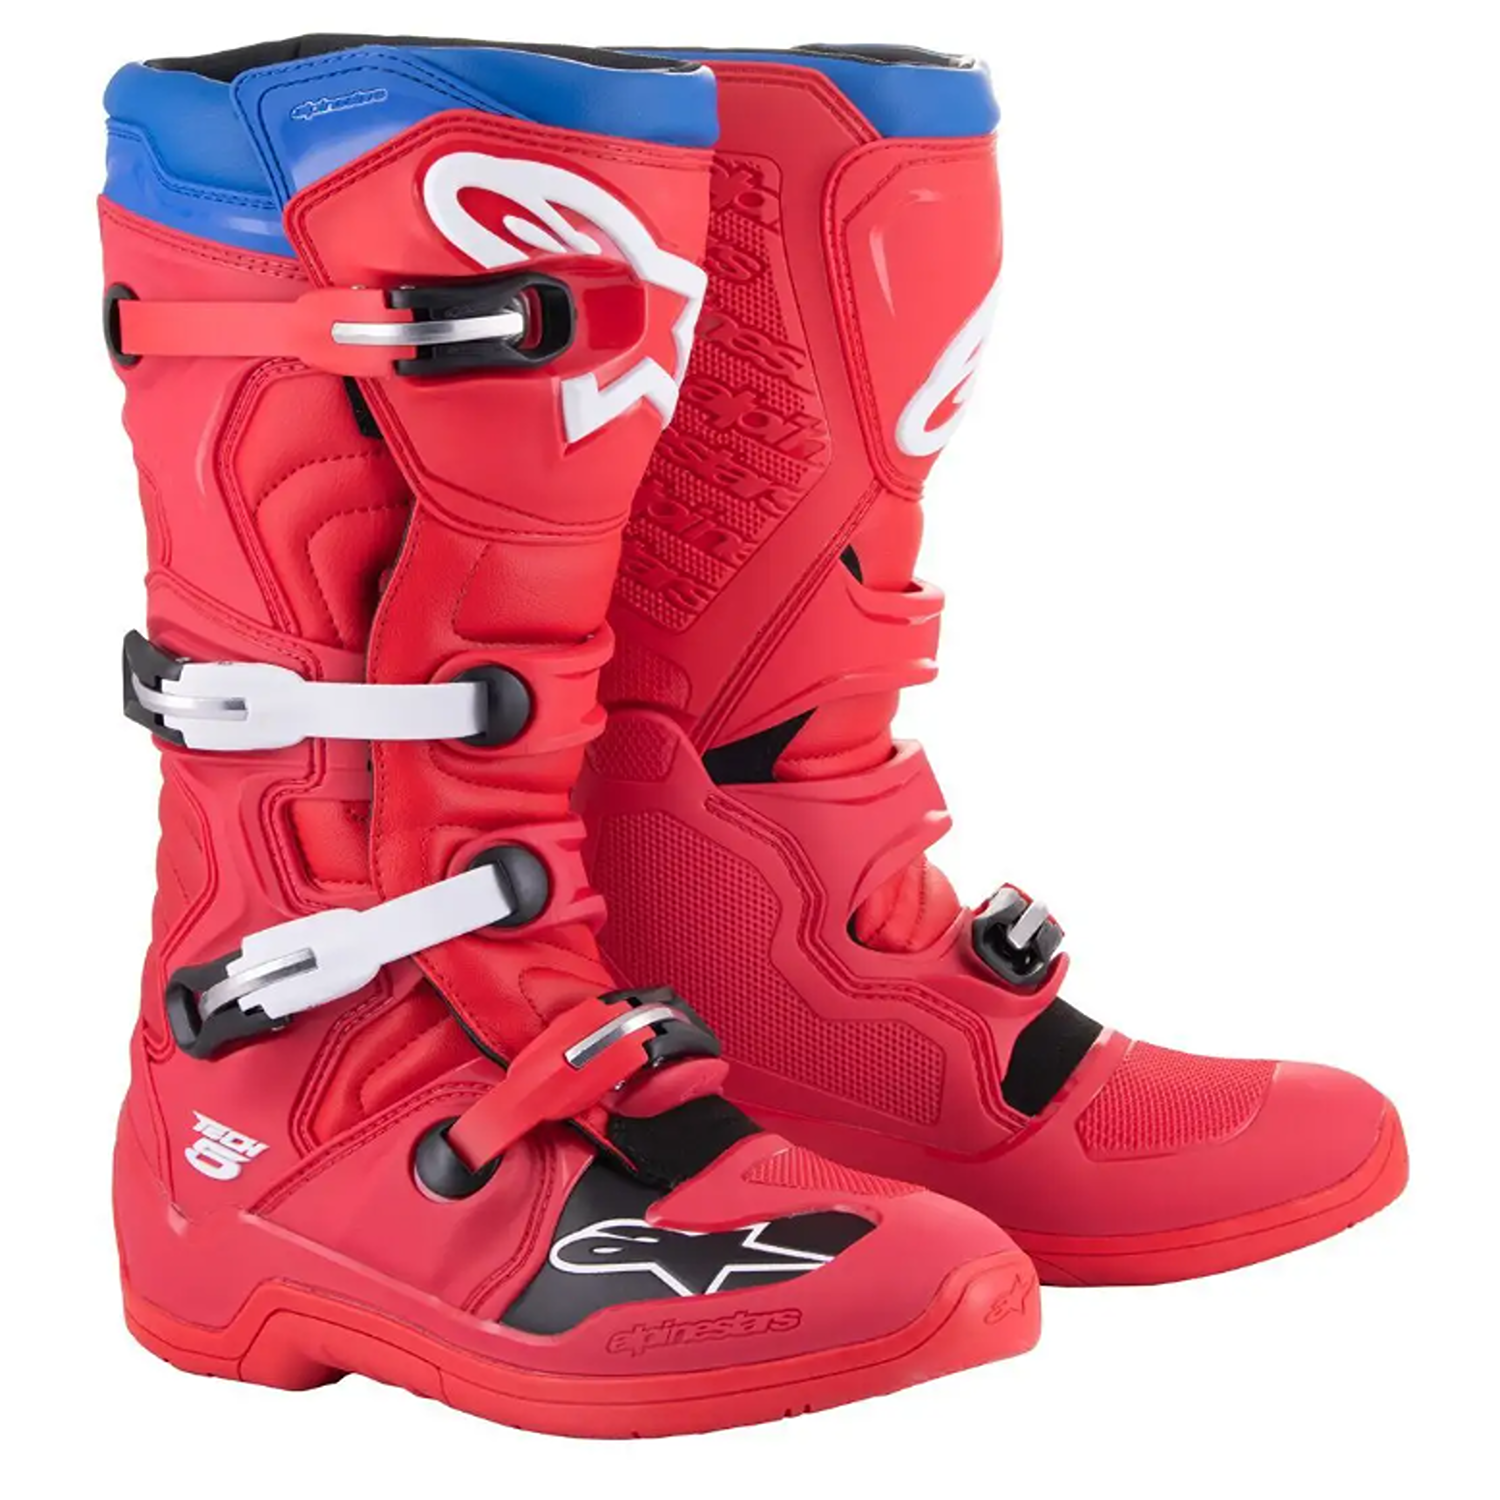 Image of Alpinestars Tech 5 Boots Bright Red Dark Red Blue Größe US 11